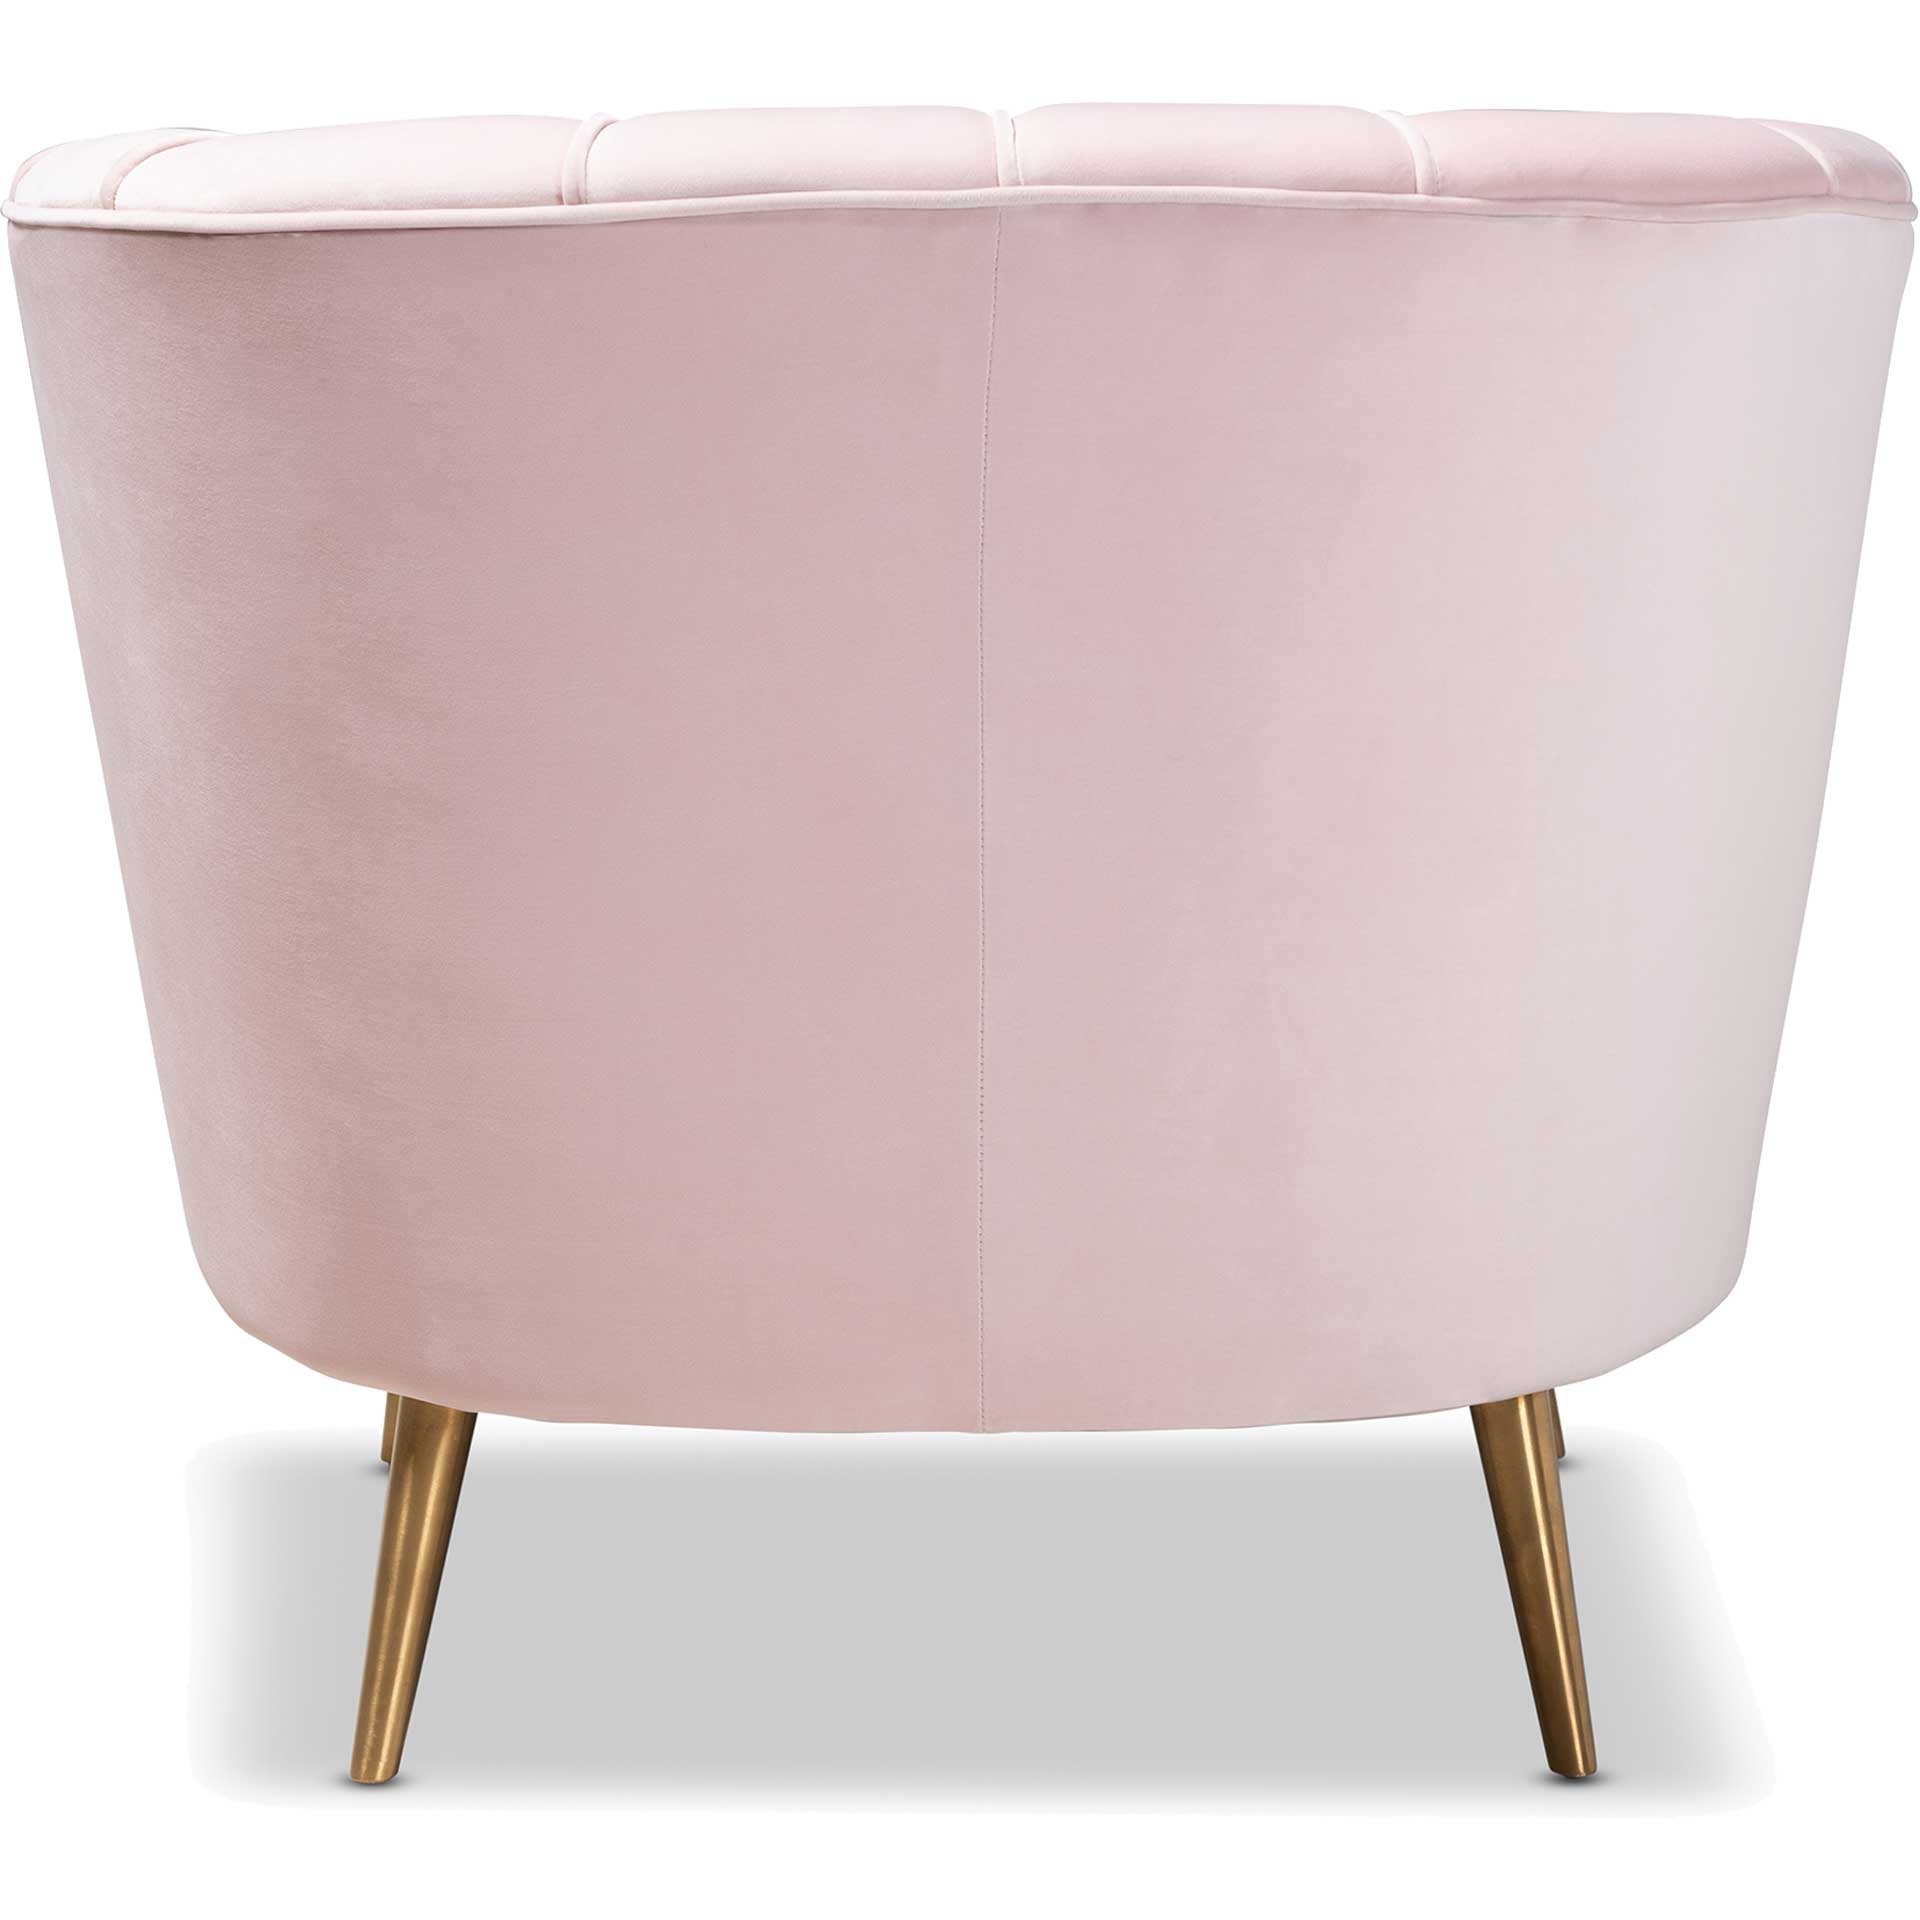 Emara Velvet Fabric Upholstered Chair Light Pink/Gold